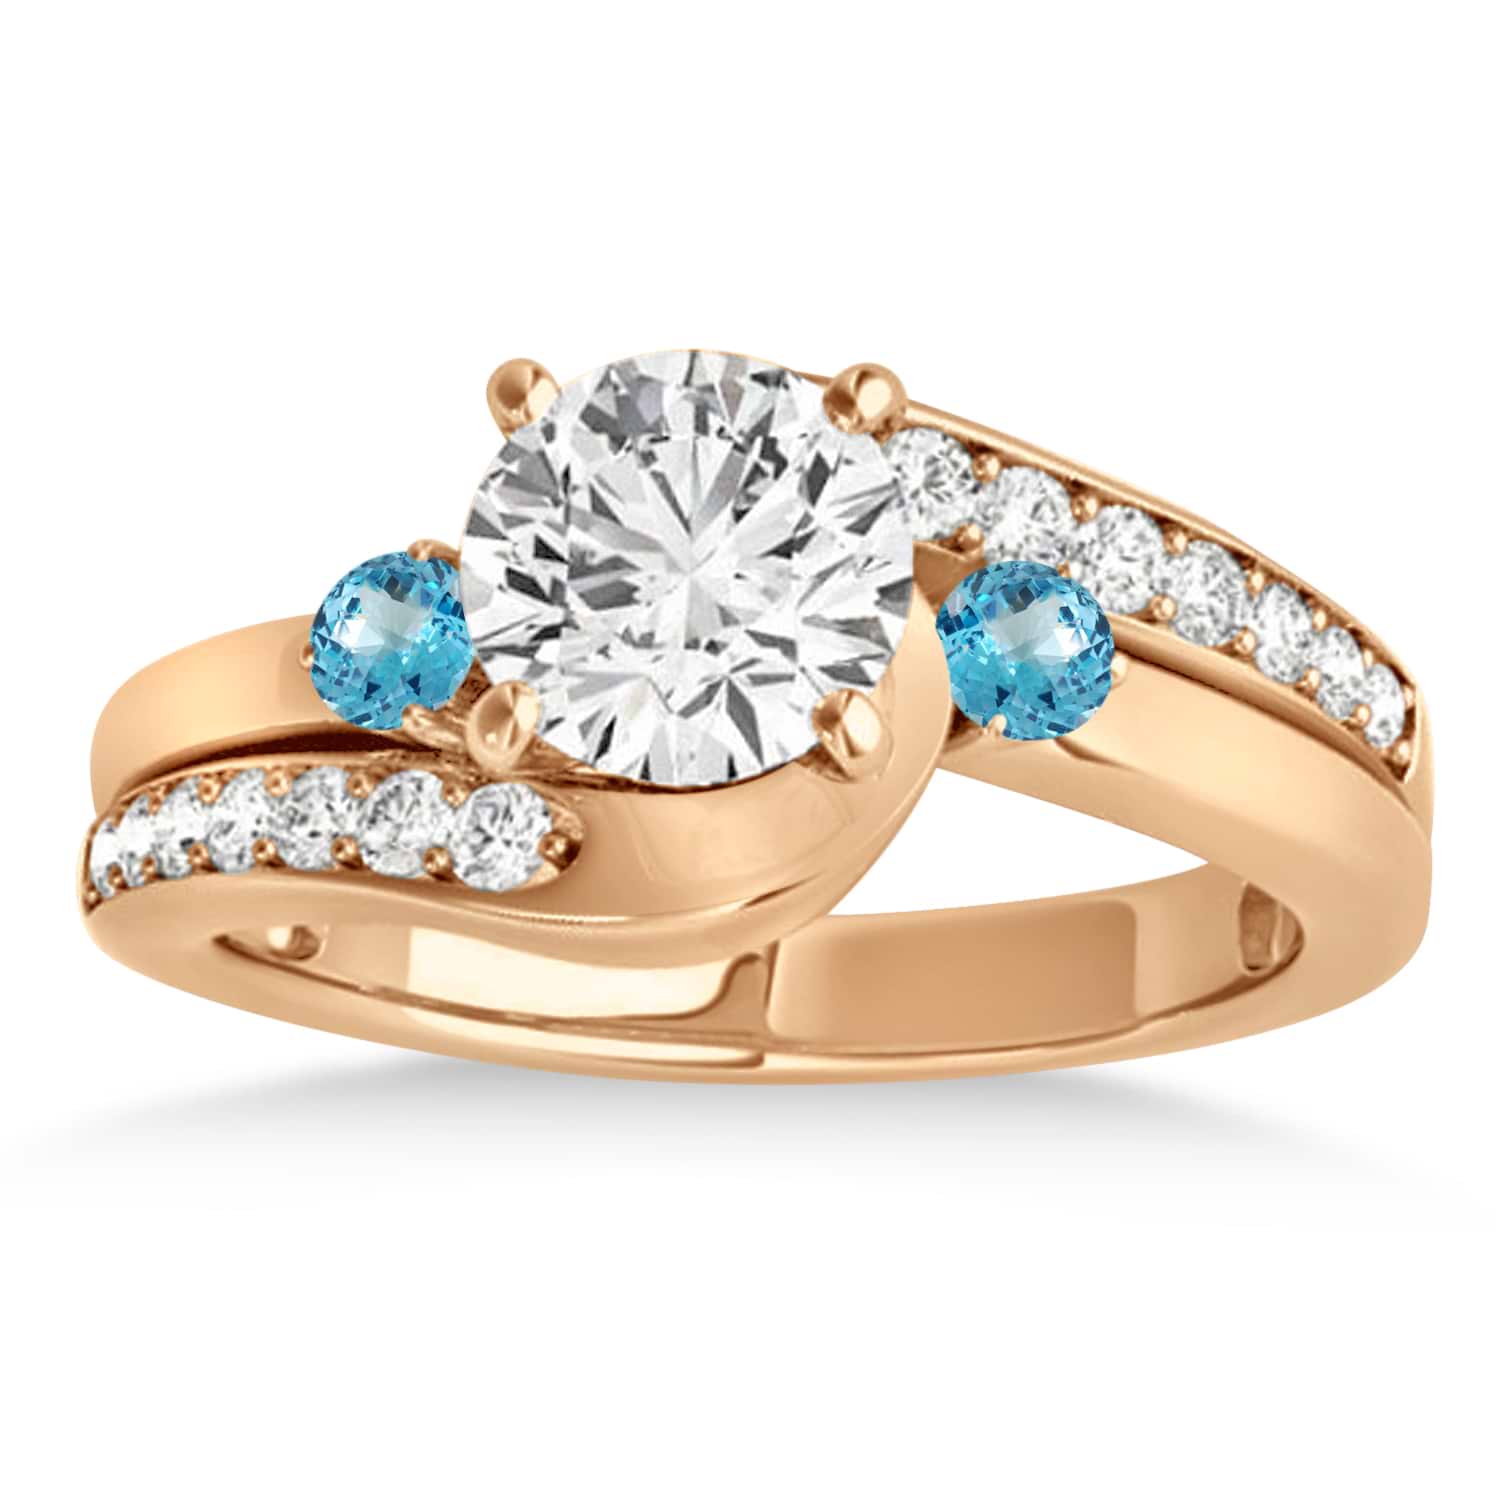 Swirl Design Blue Topaz & Diamond Engagement Ring Setting 18k Rose Gold 0.38ct